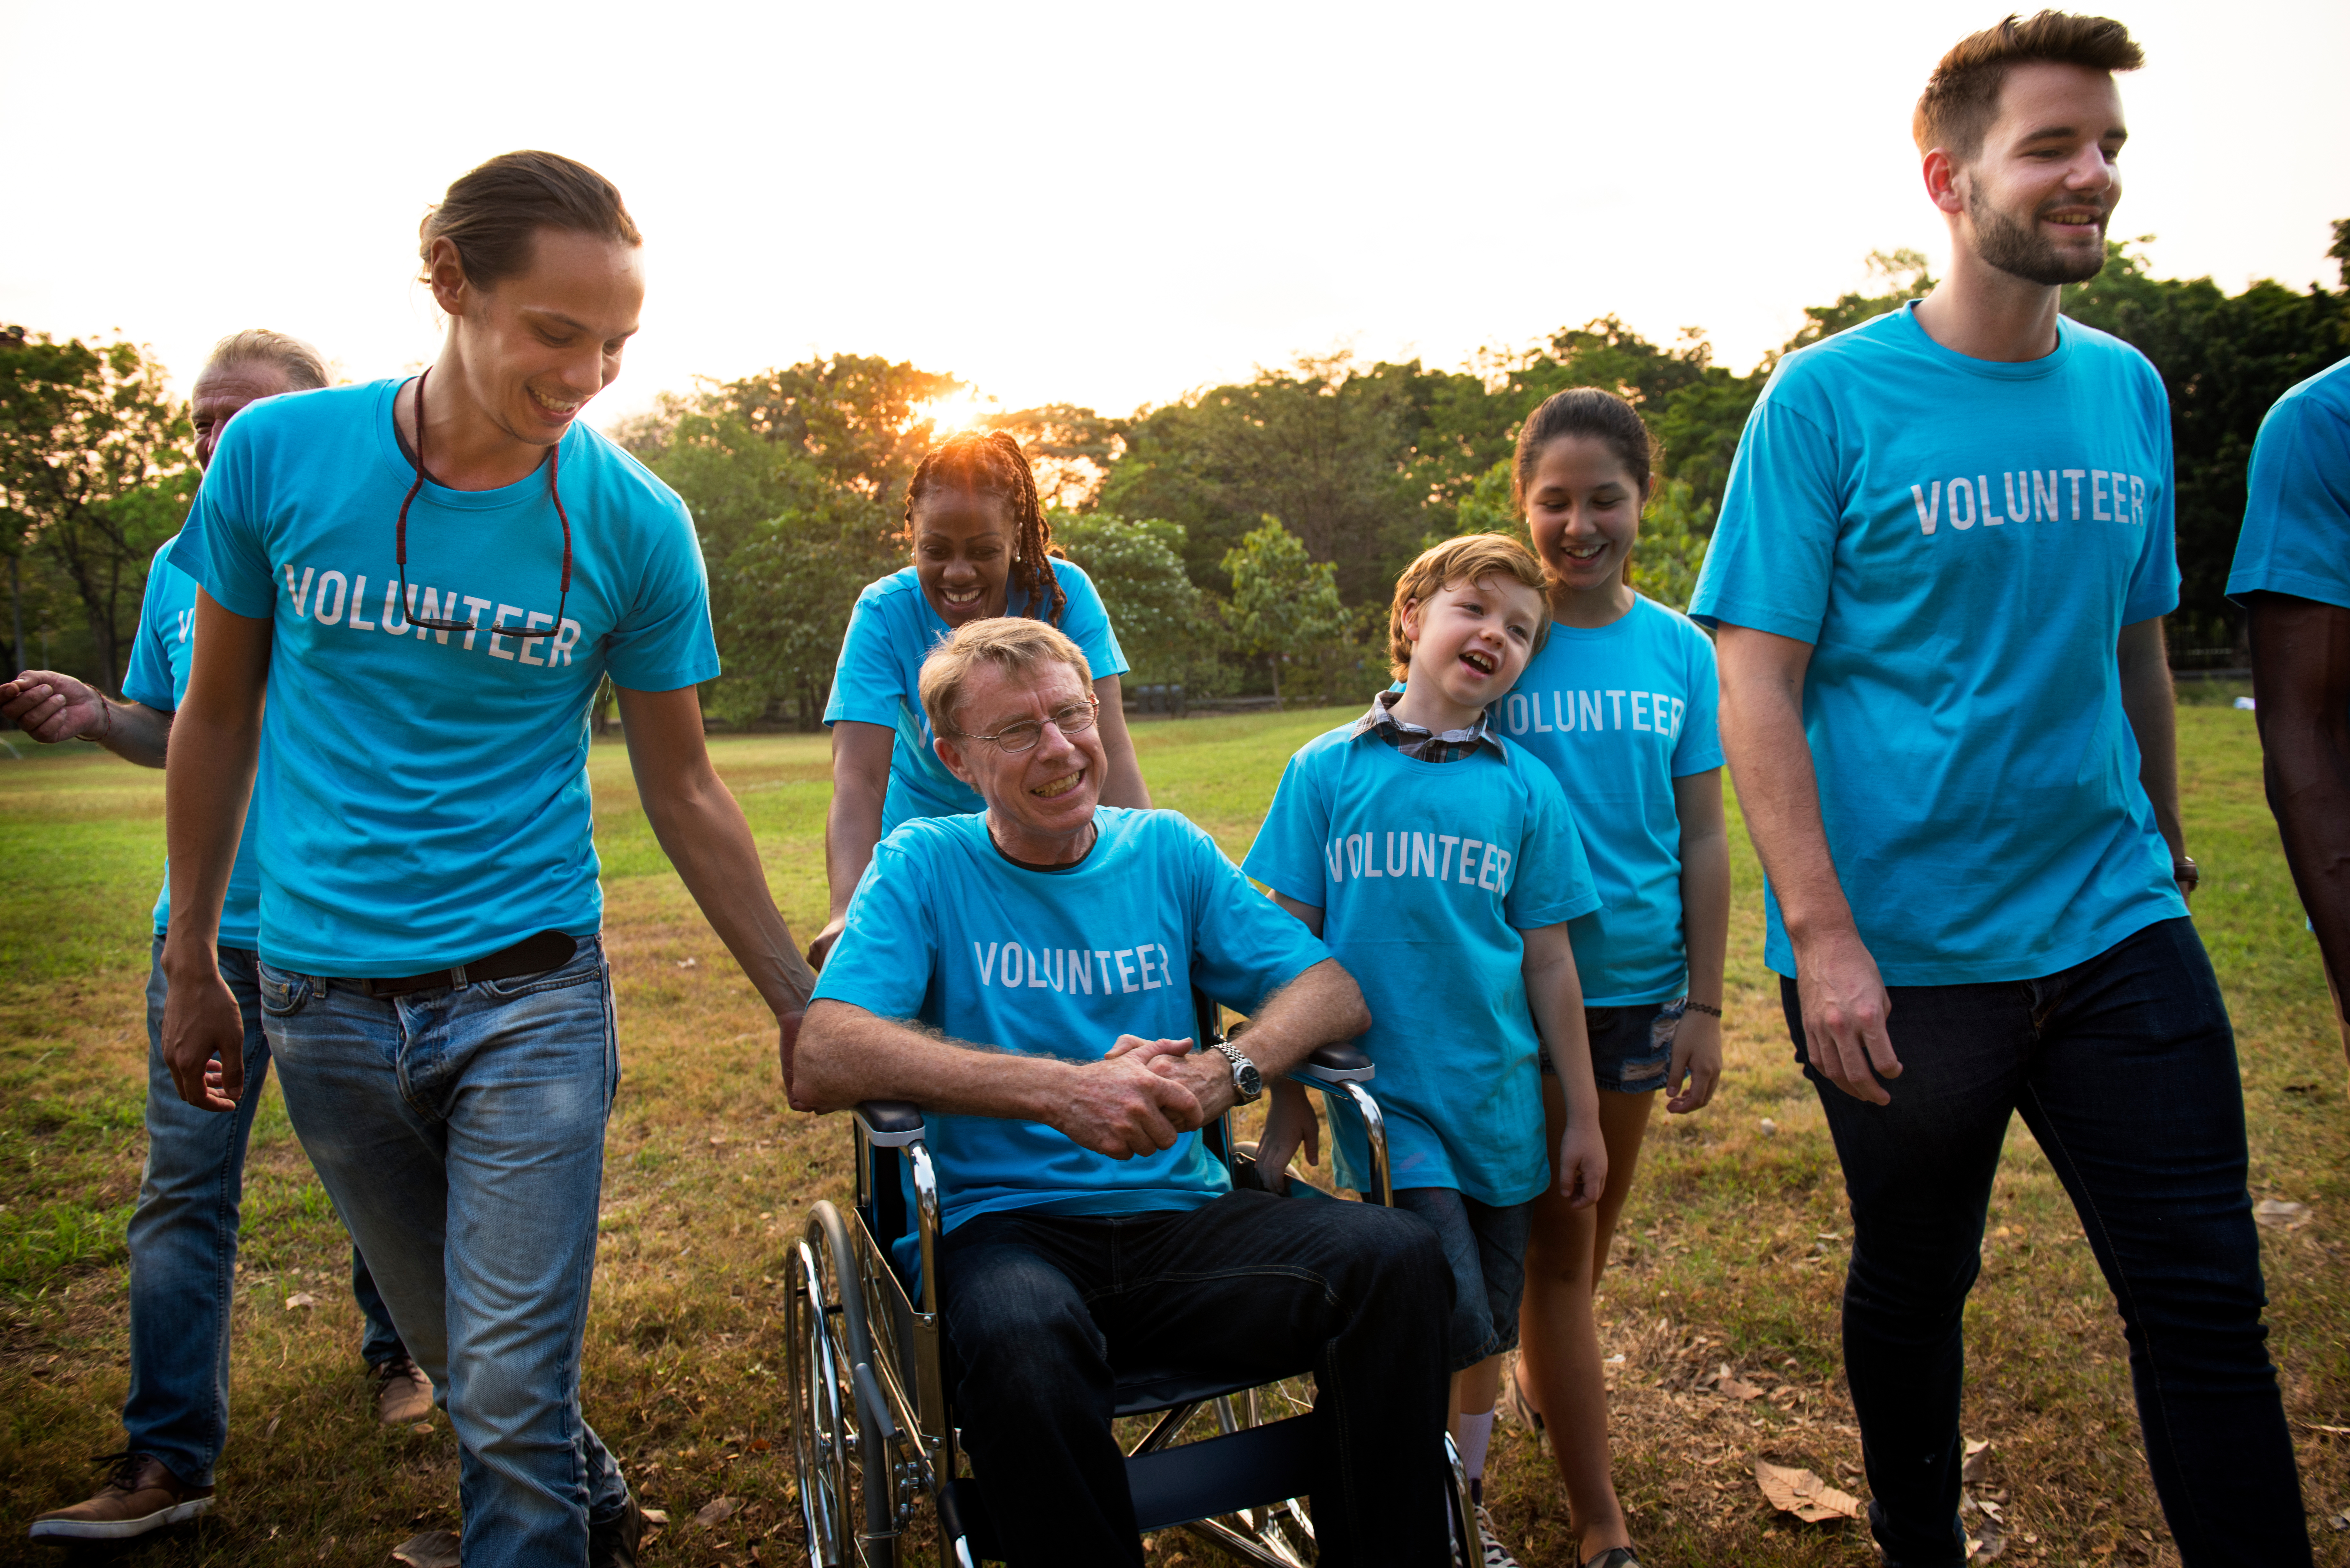 Eine Gruppe von freiwilligen Helfern, die gemeinsam auf einer Wiese stehen, eine Person ist im Rollstuhl. Alle tragen ein blaues Shirt, auf dem "volunteer" steht